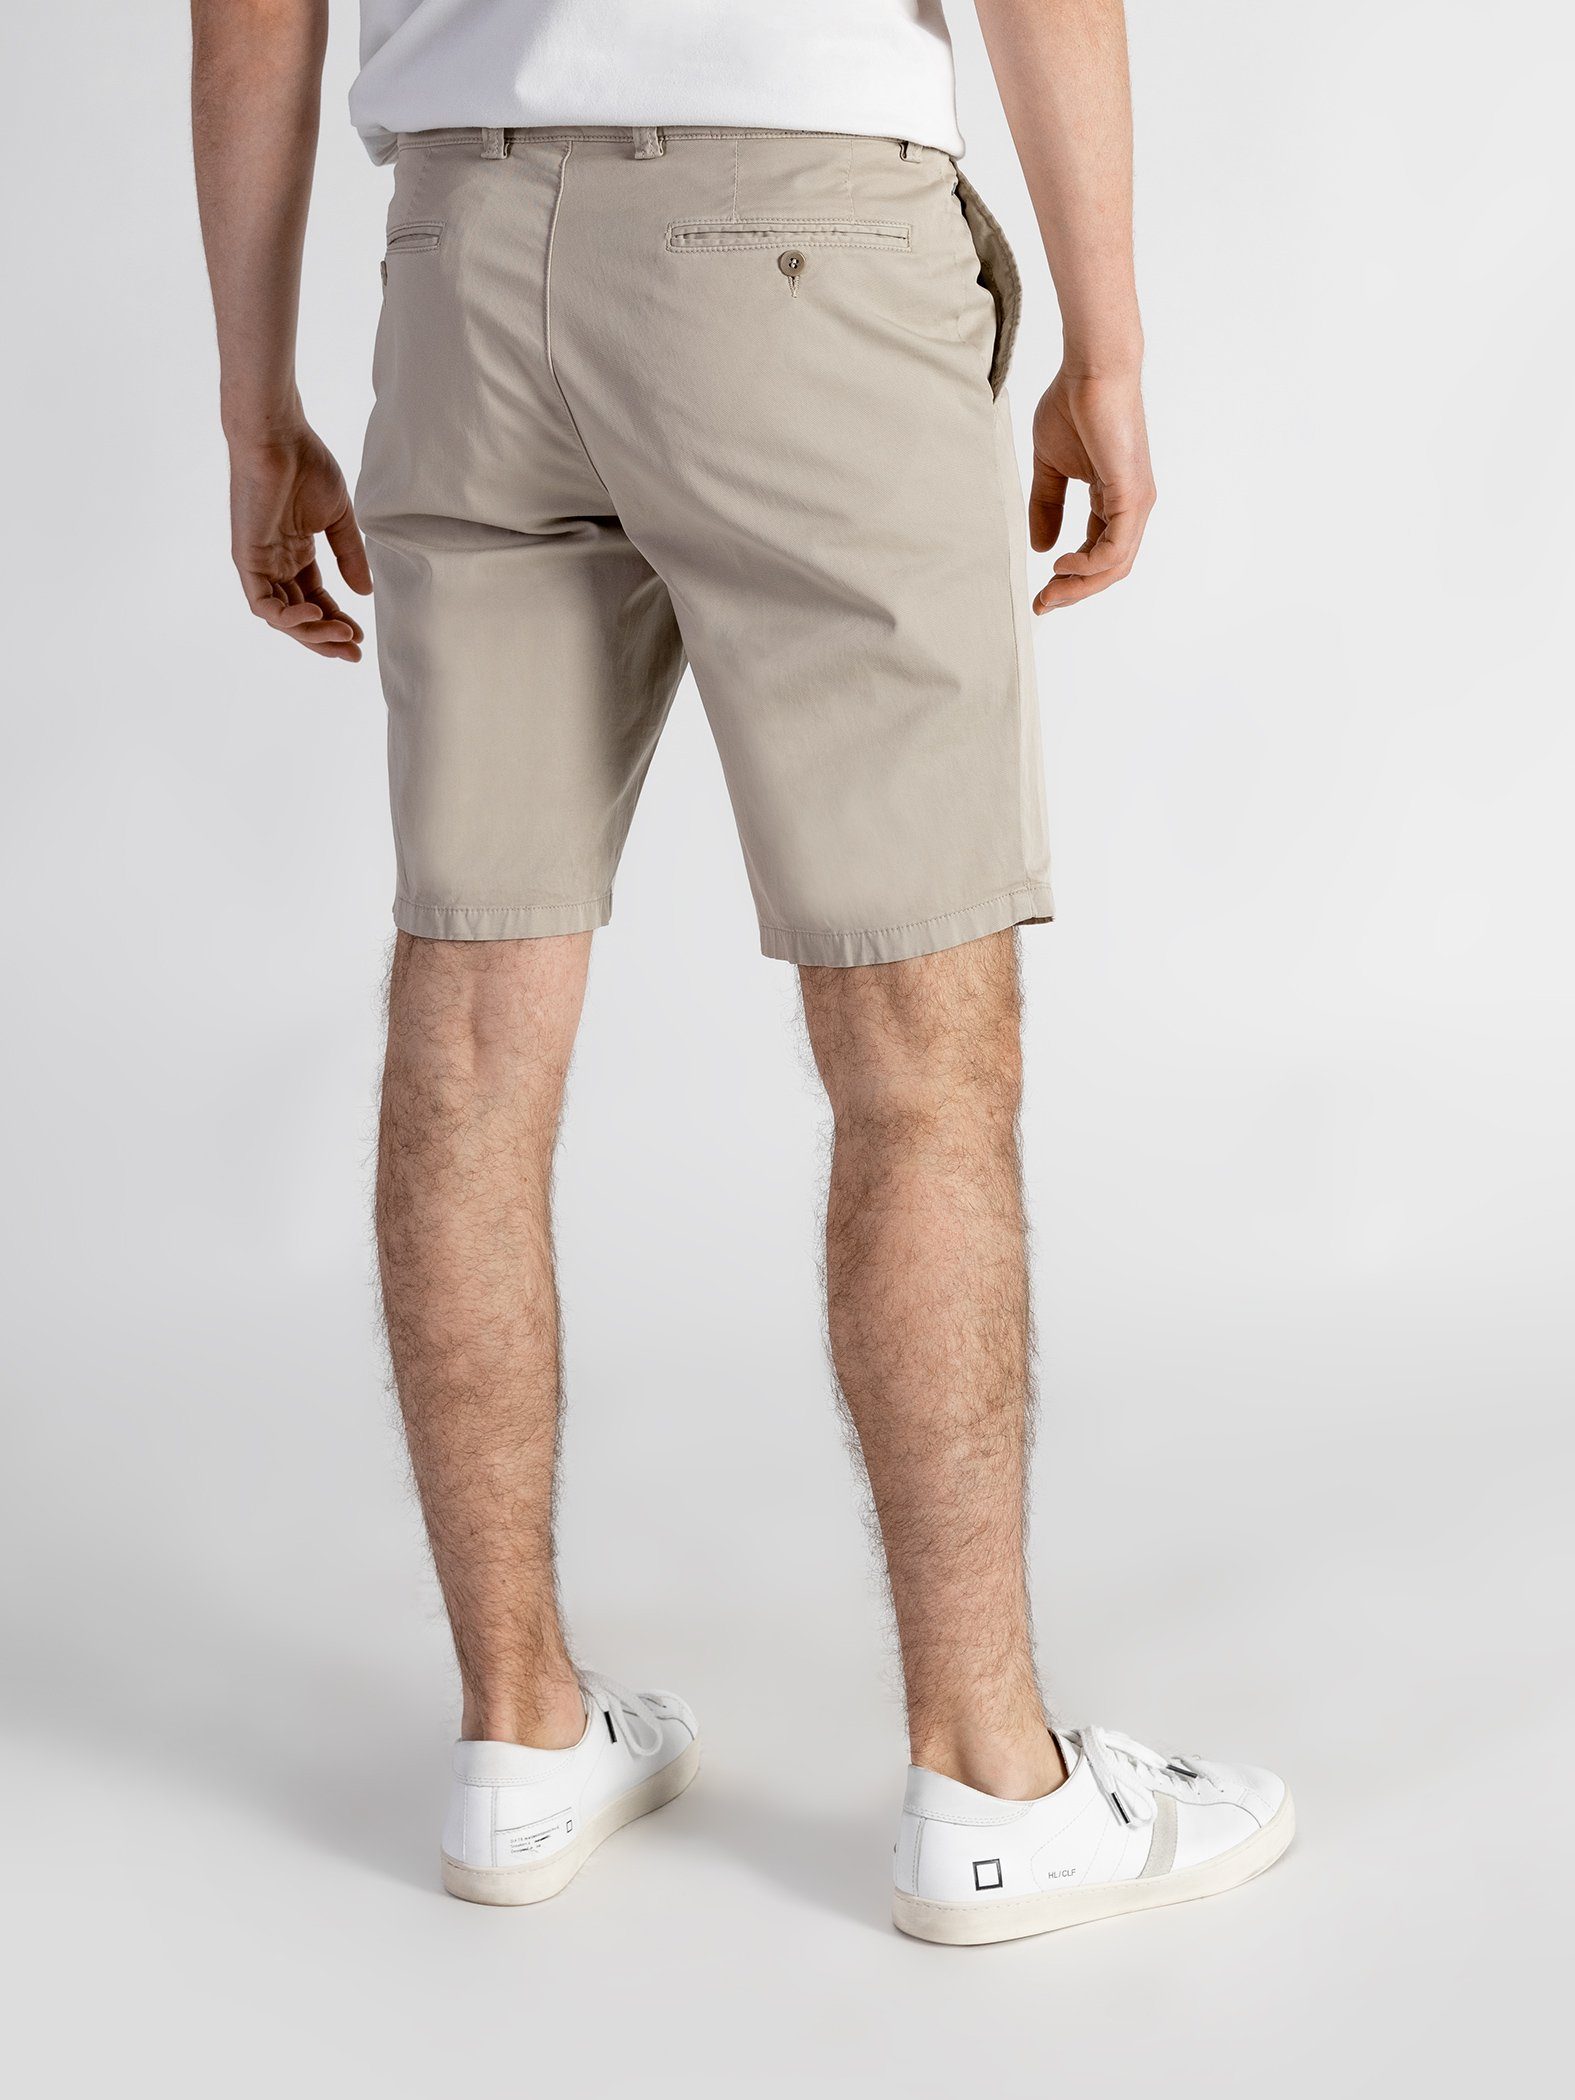 mit Shorts TwoMates GOTS-zertifiziert Shorts sandbeige elastischem Bund, Farbauswahl,